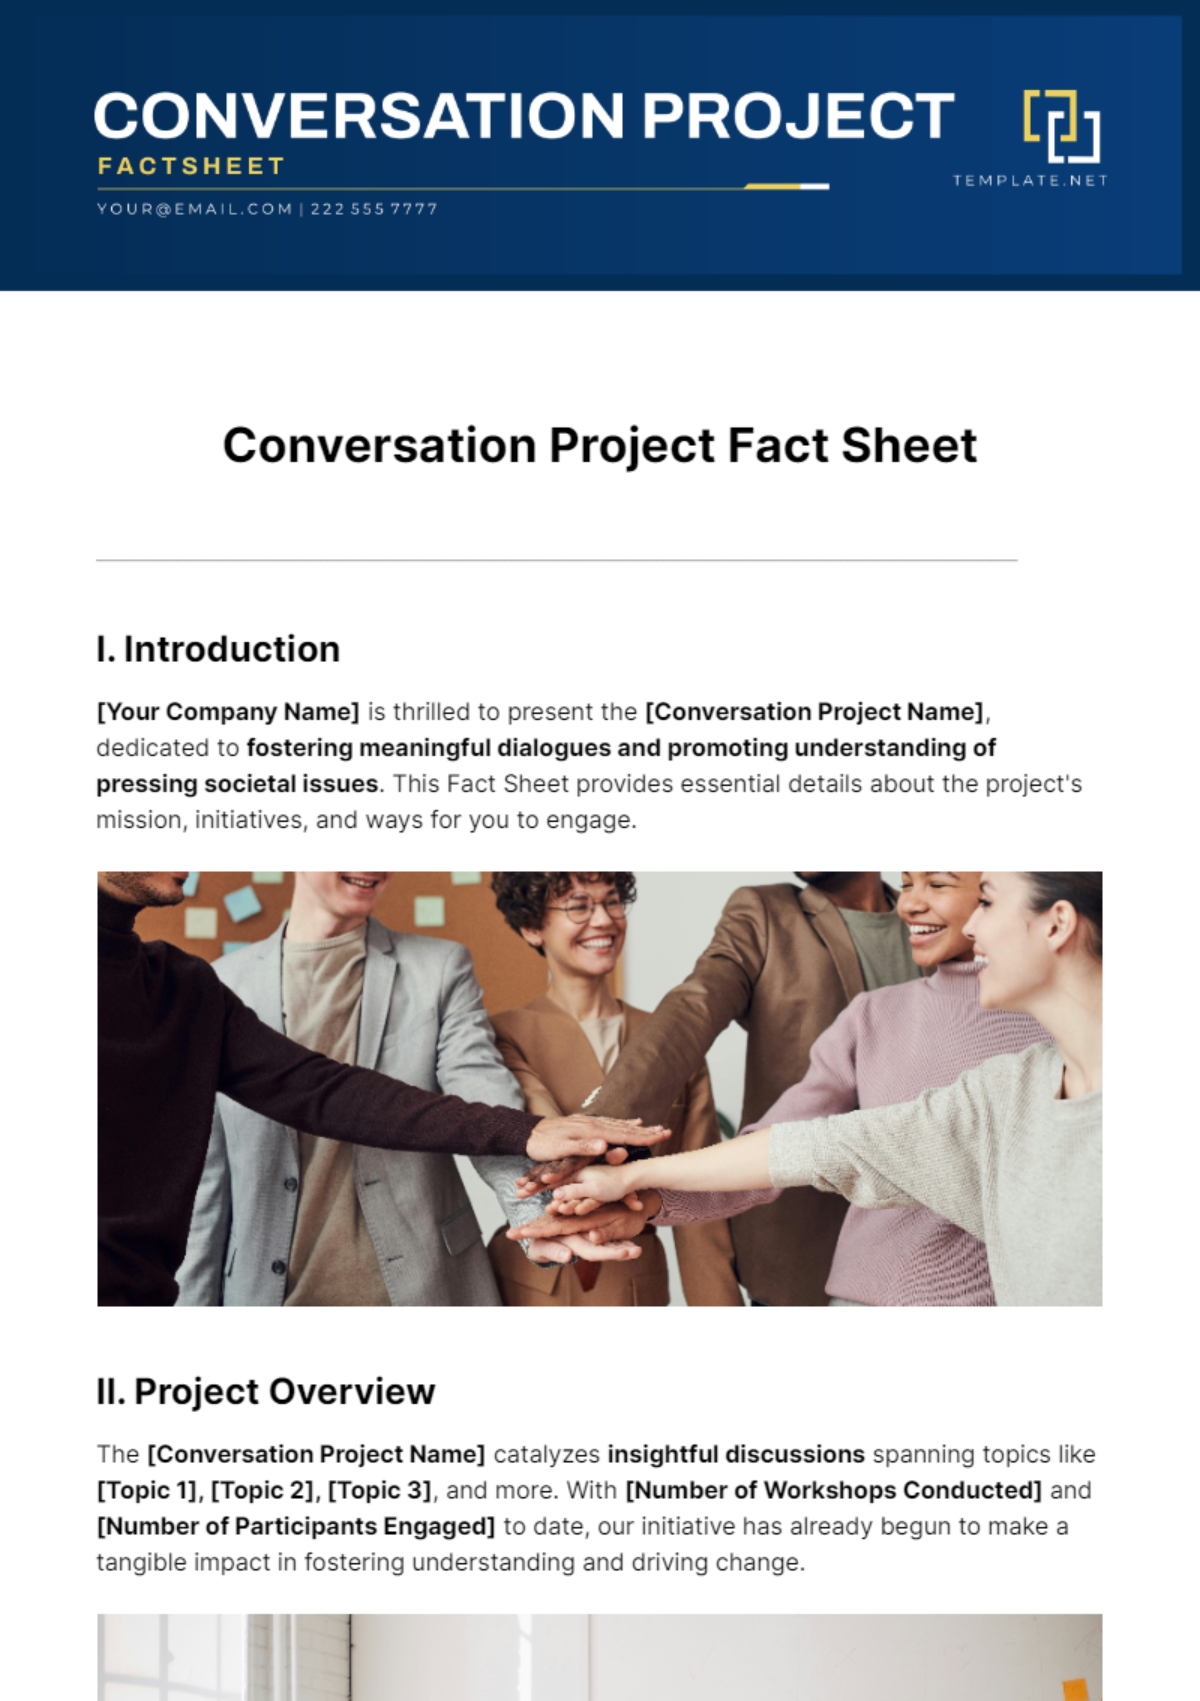 Conversation Project Fact Sheet Template